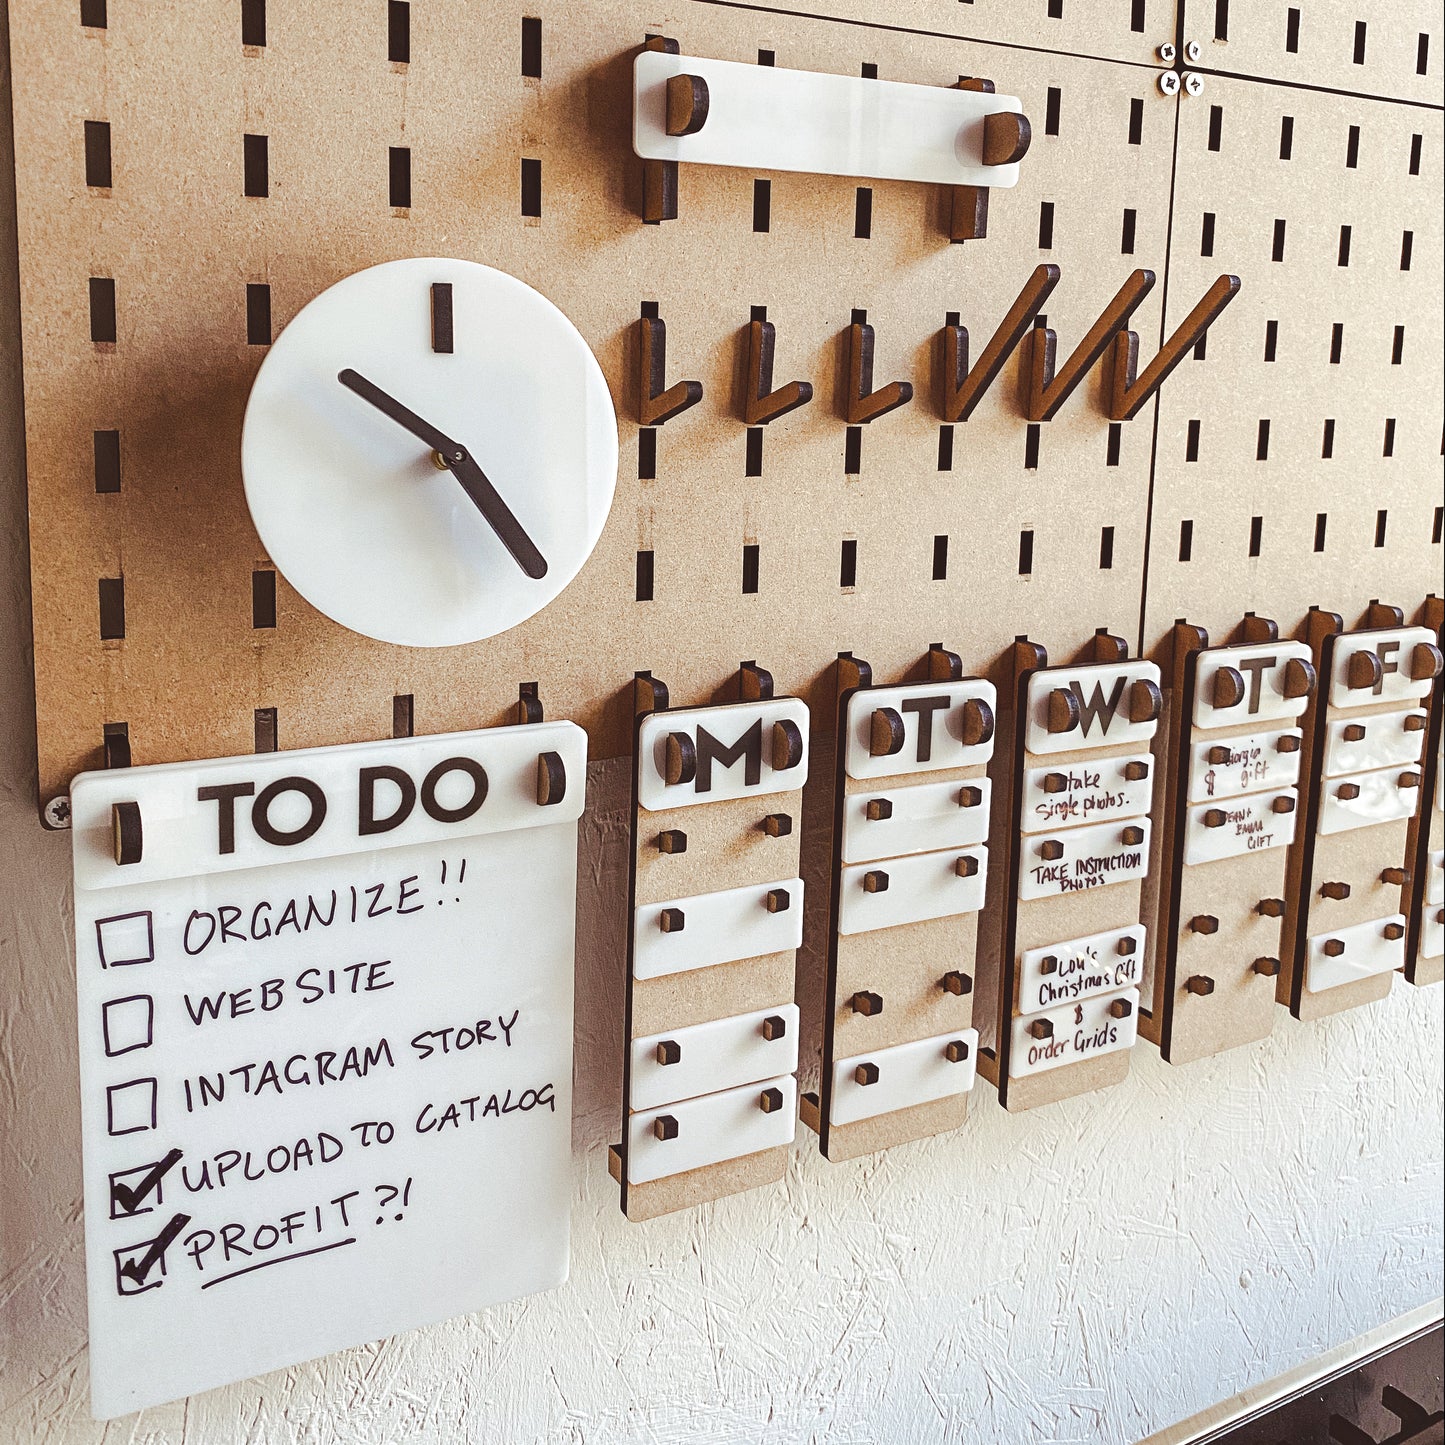 Dashboard Modular Organization Center - To Do List, Clock and Week Calendar